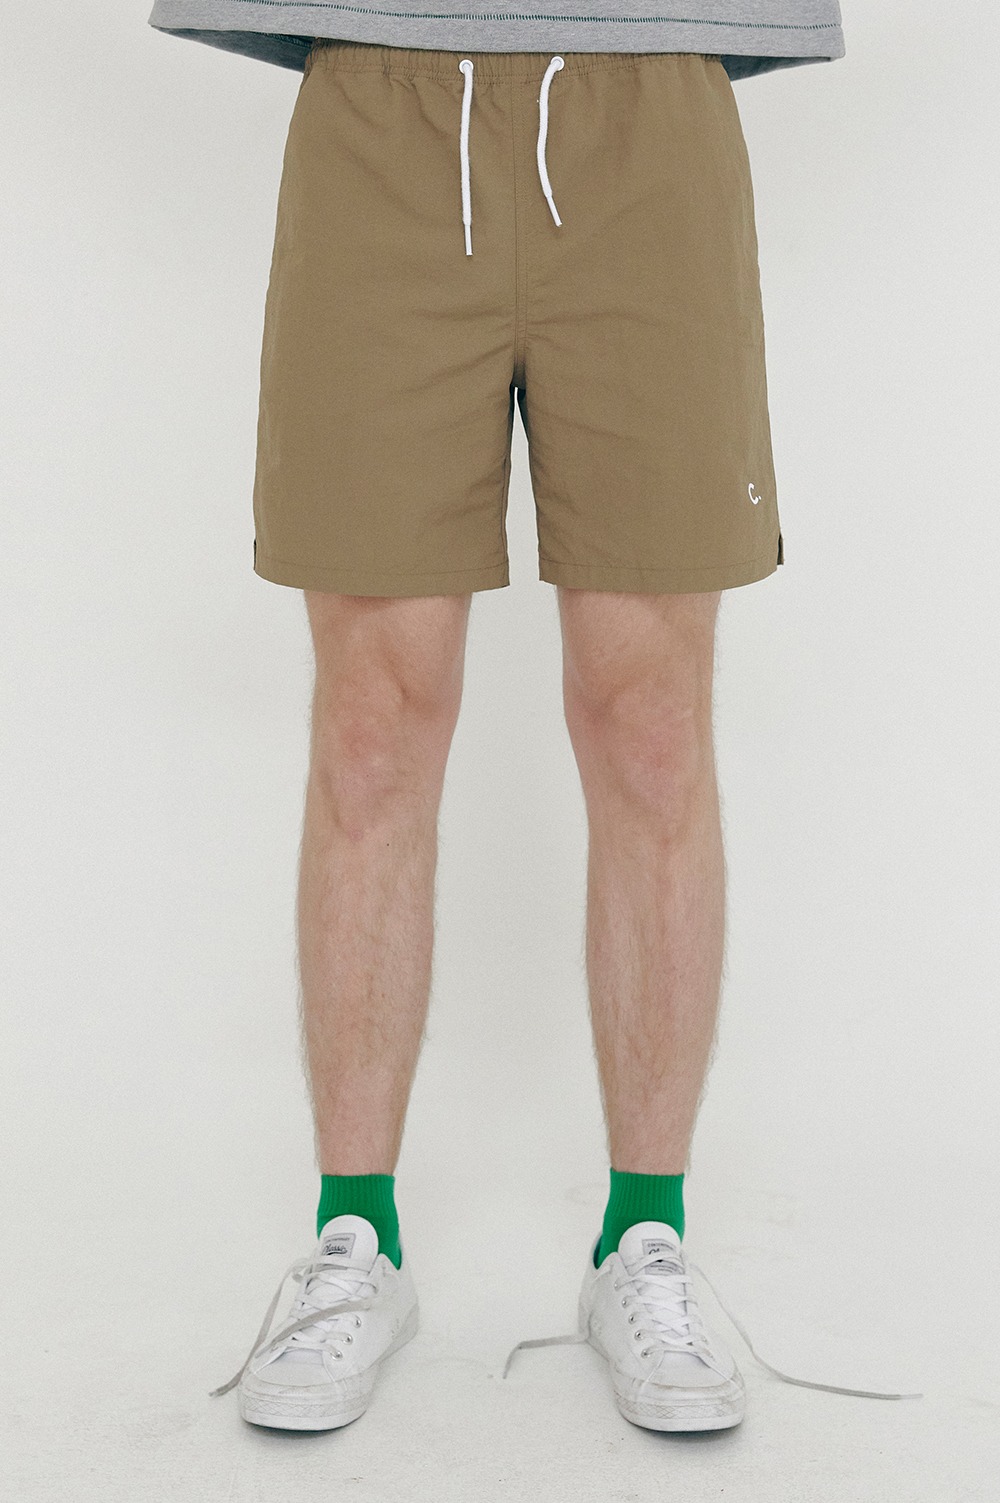 clove - [SS21 clove] New Summer Shorts_Men Khaki